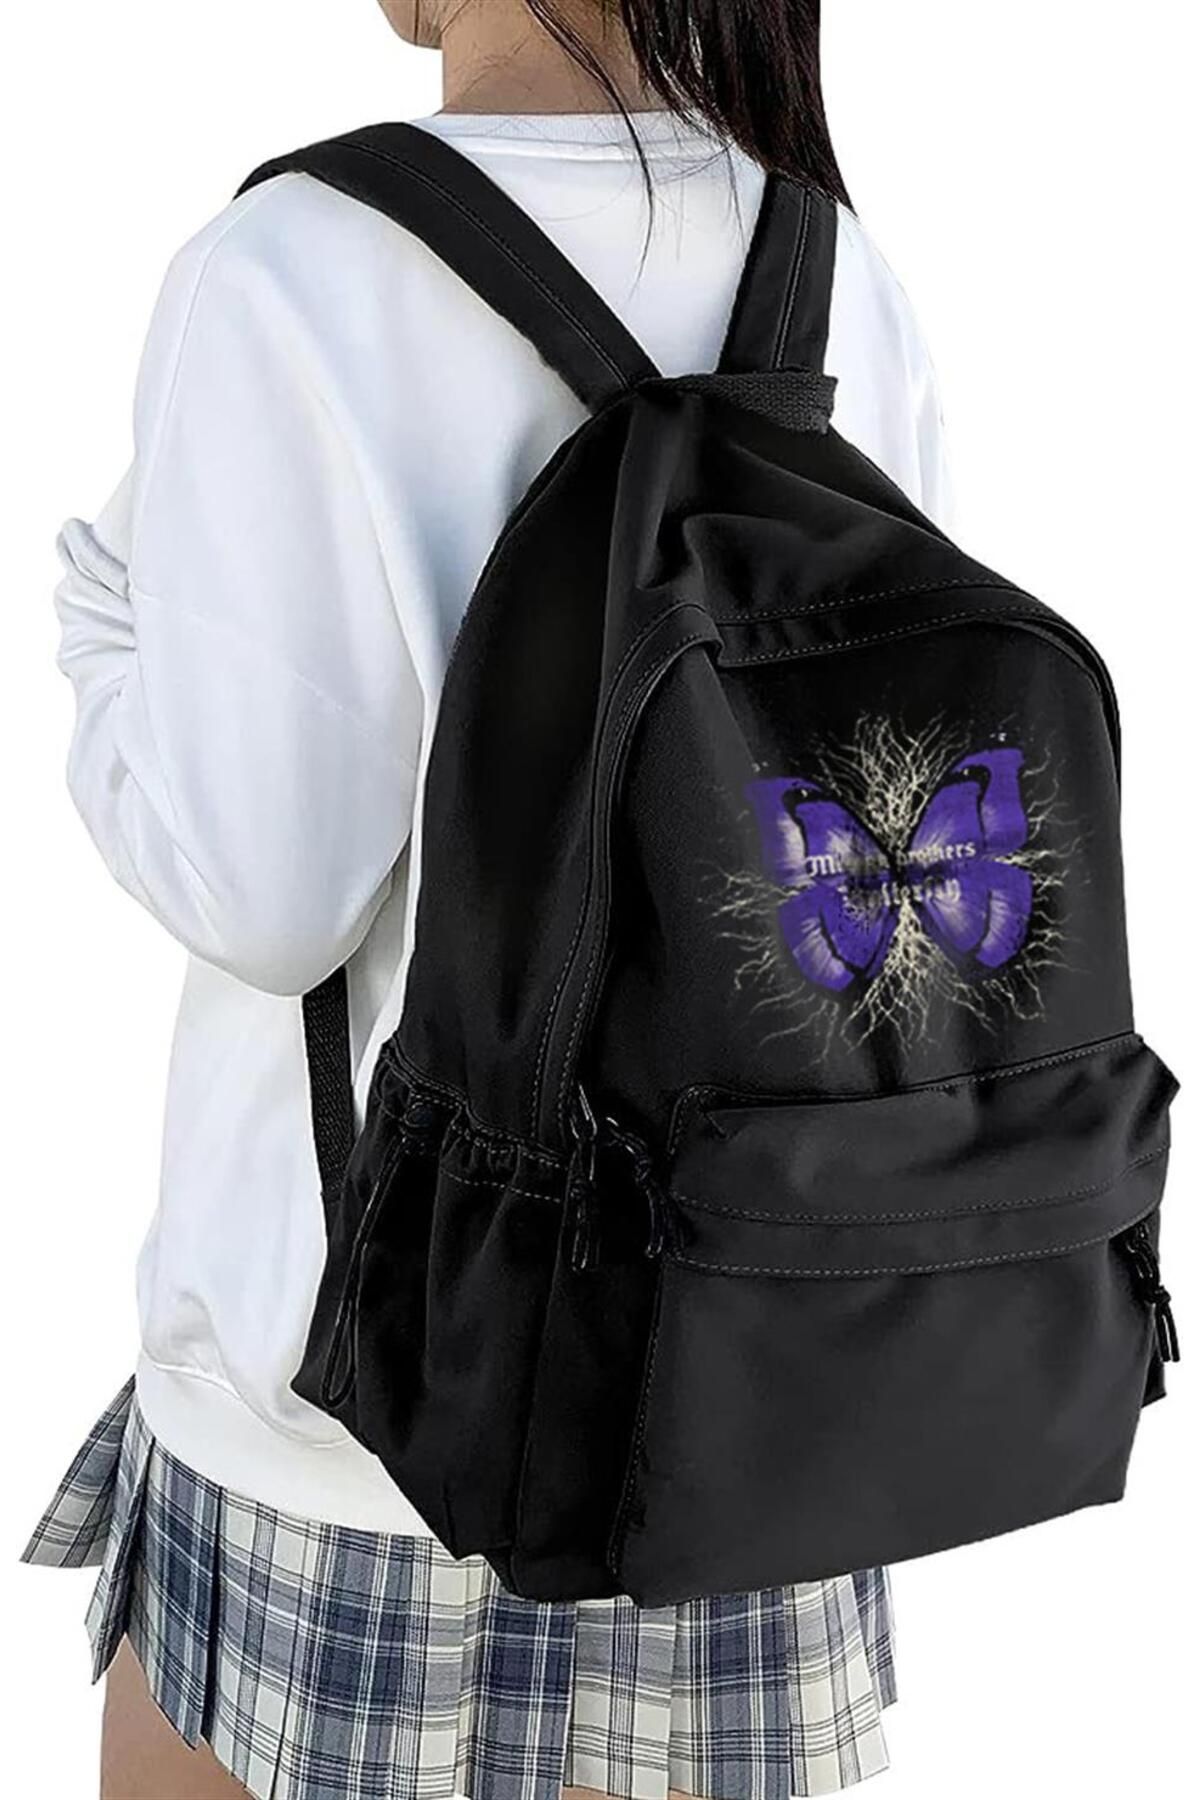 Touz Moda dompuleri moda Butterfly Baskılı Unisex Sırt Çantası